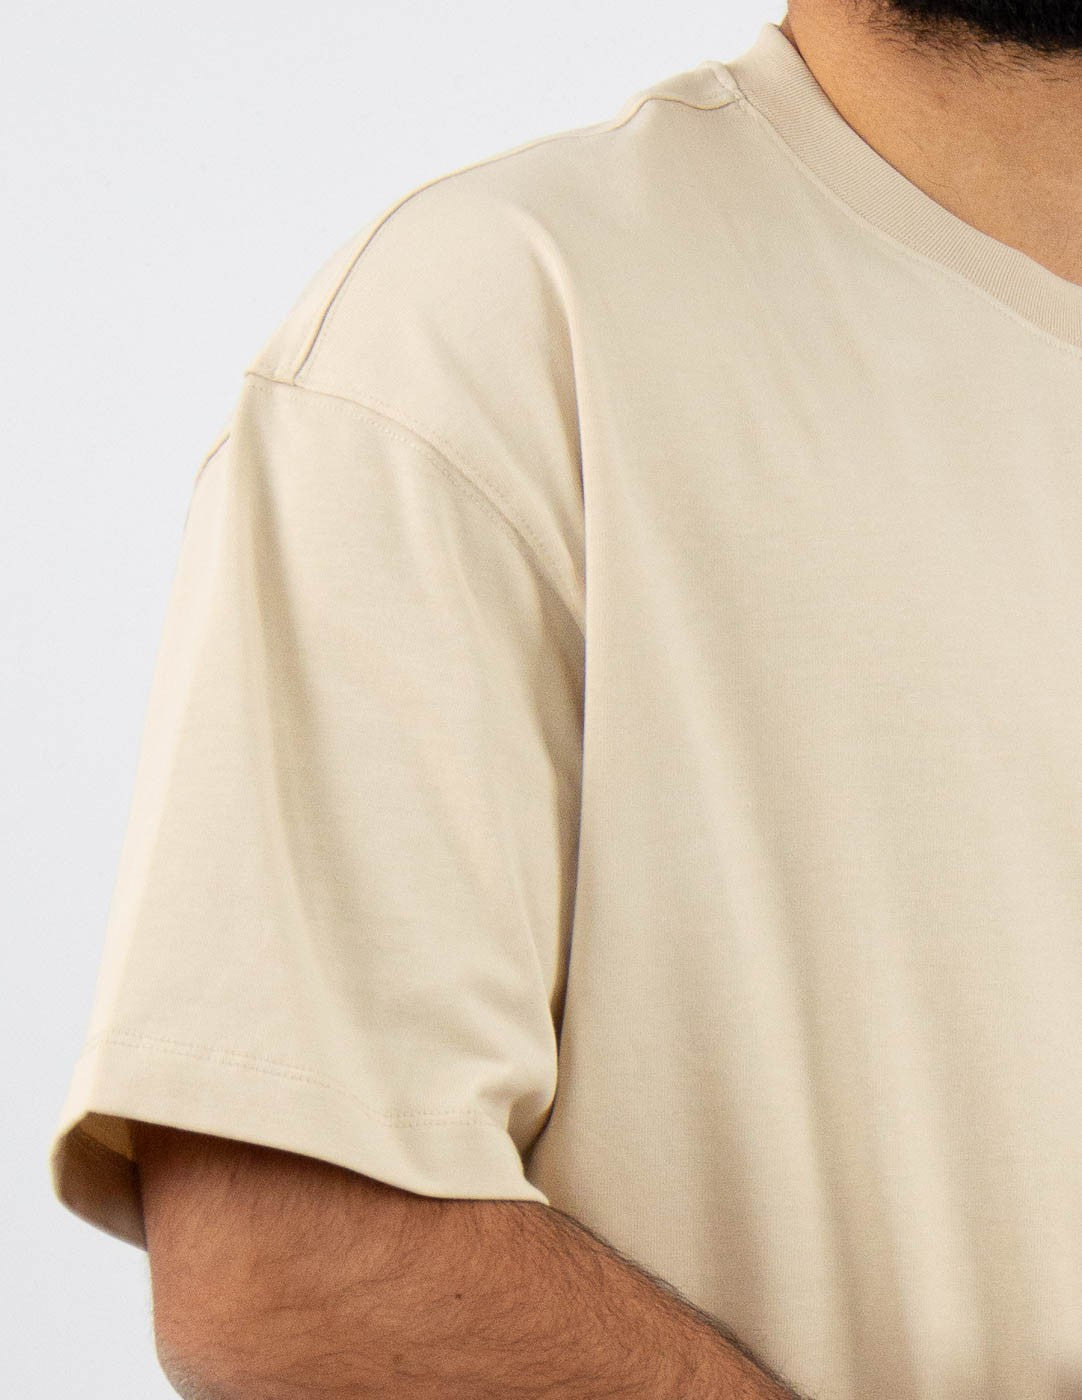 t-shirt uomo oversize tessuto premium